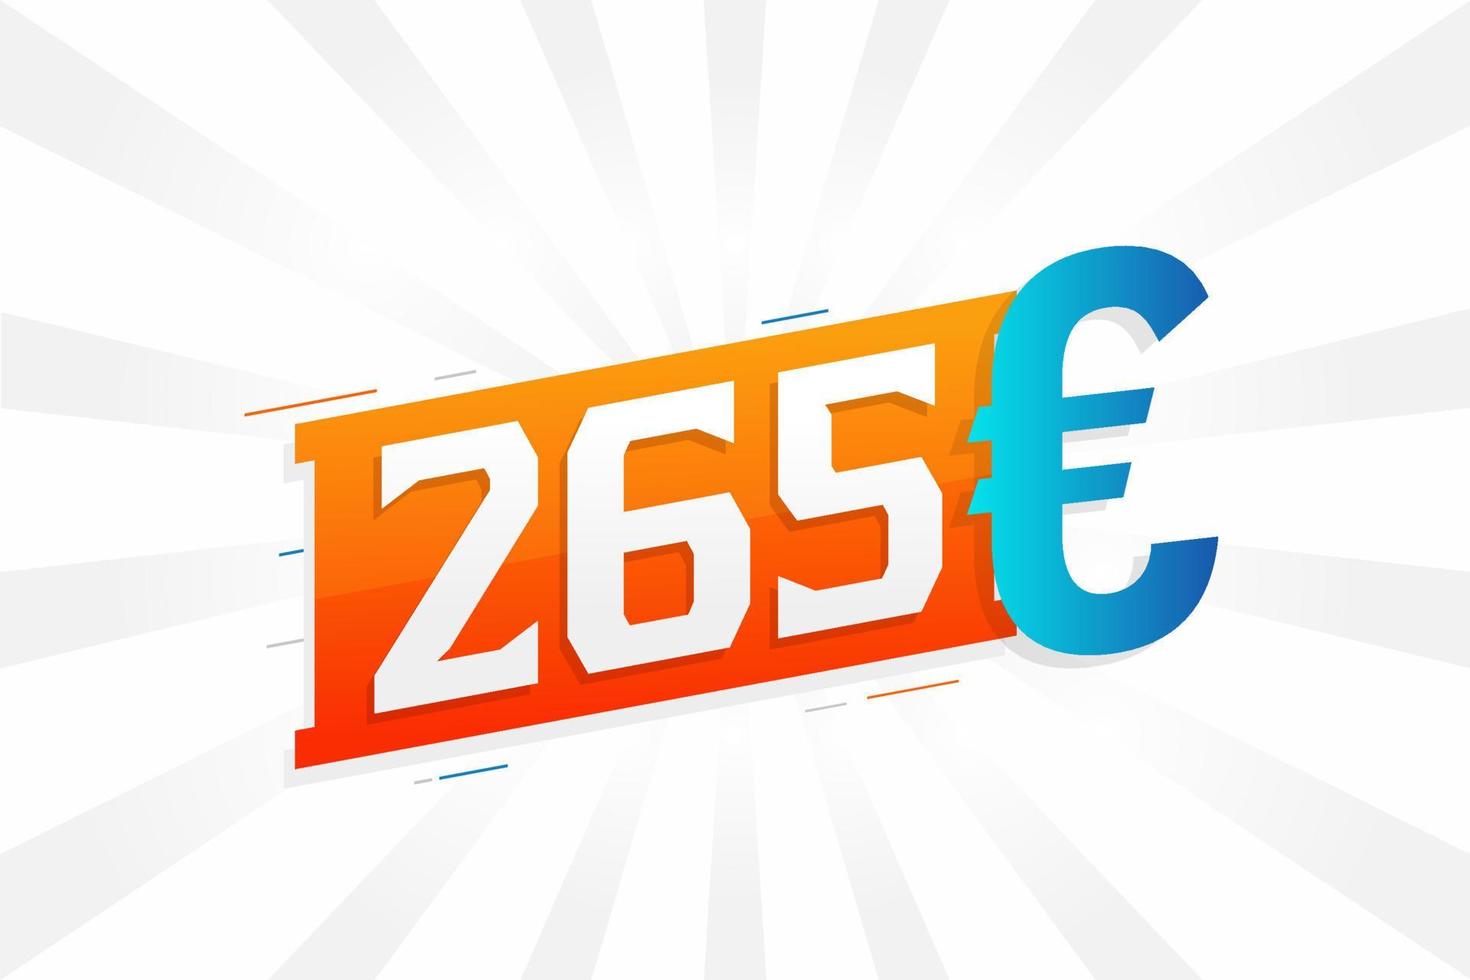 265-Euro-Währungsvektor-Textsymbol. 265 Euro Geldvorratvektor der Europäischen Union vektor